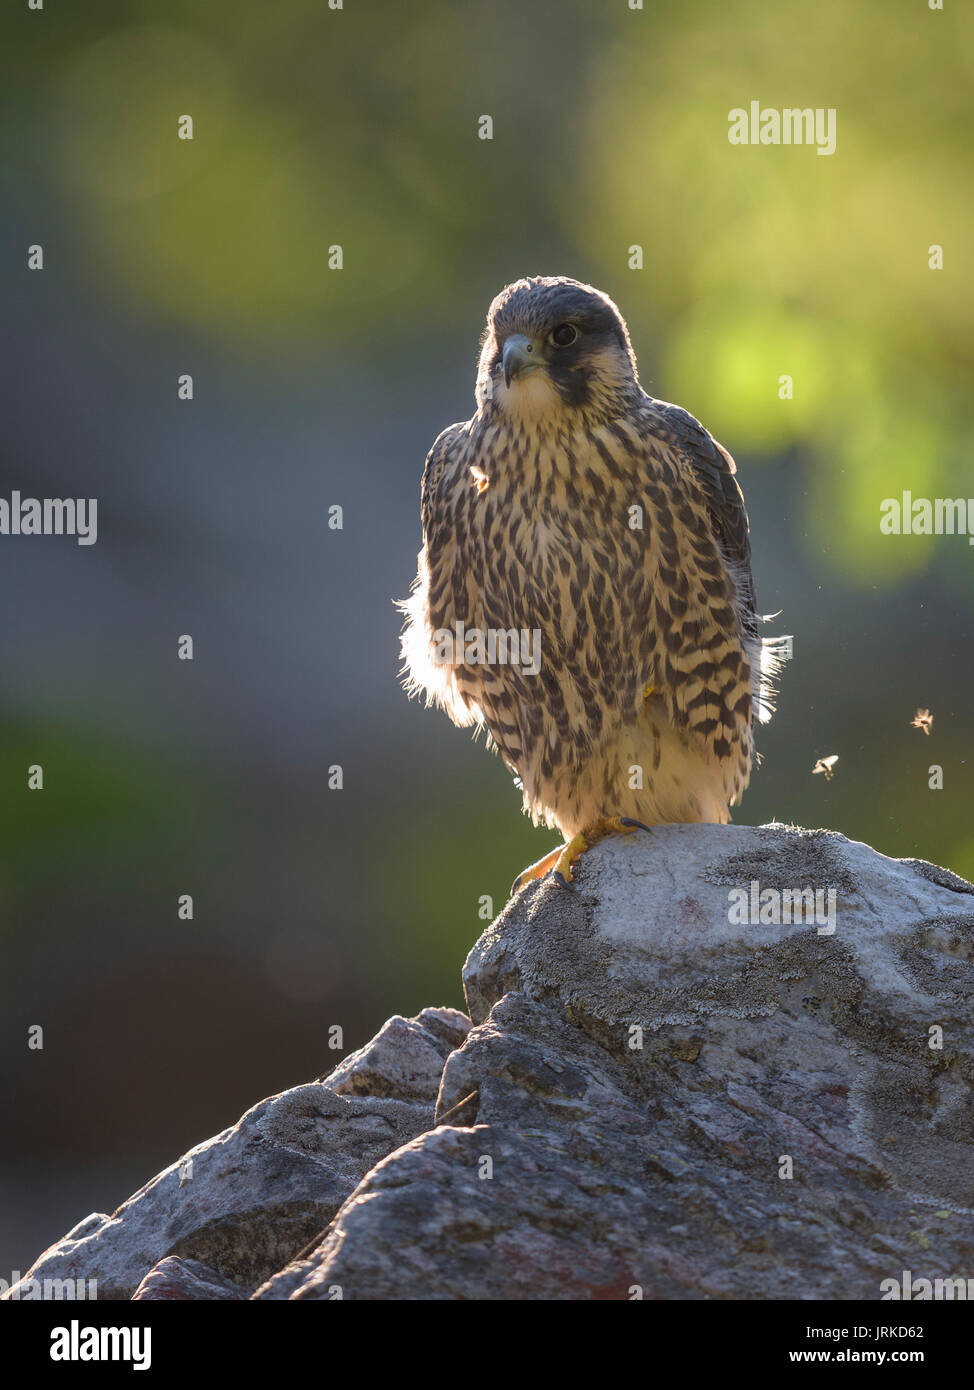 Le faucon pèlerin (Falco peregrinus), jeune oiseau posé sur la roche, rétroéclairé, réserve naturelle de la forêt bavaroise, Bavière, Allemagne Banque D'Images